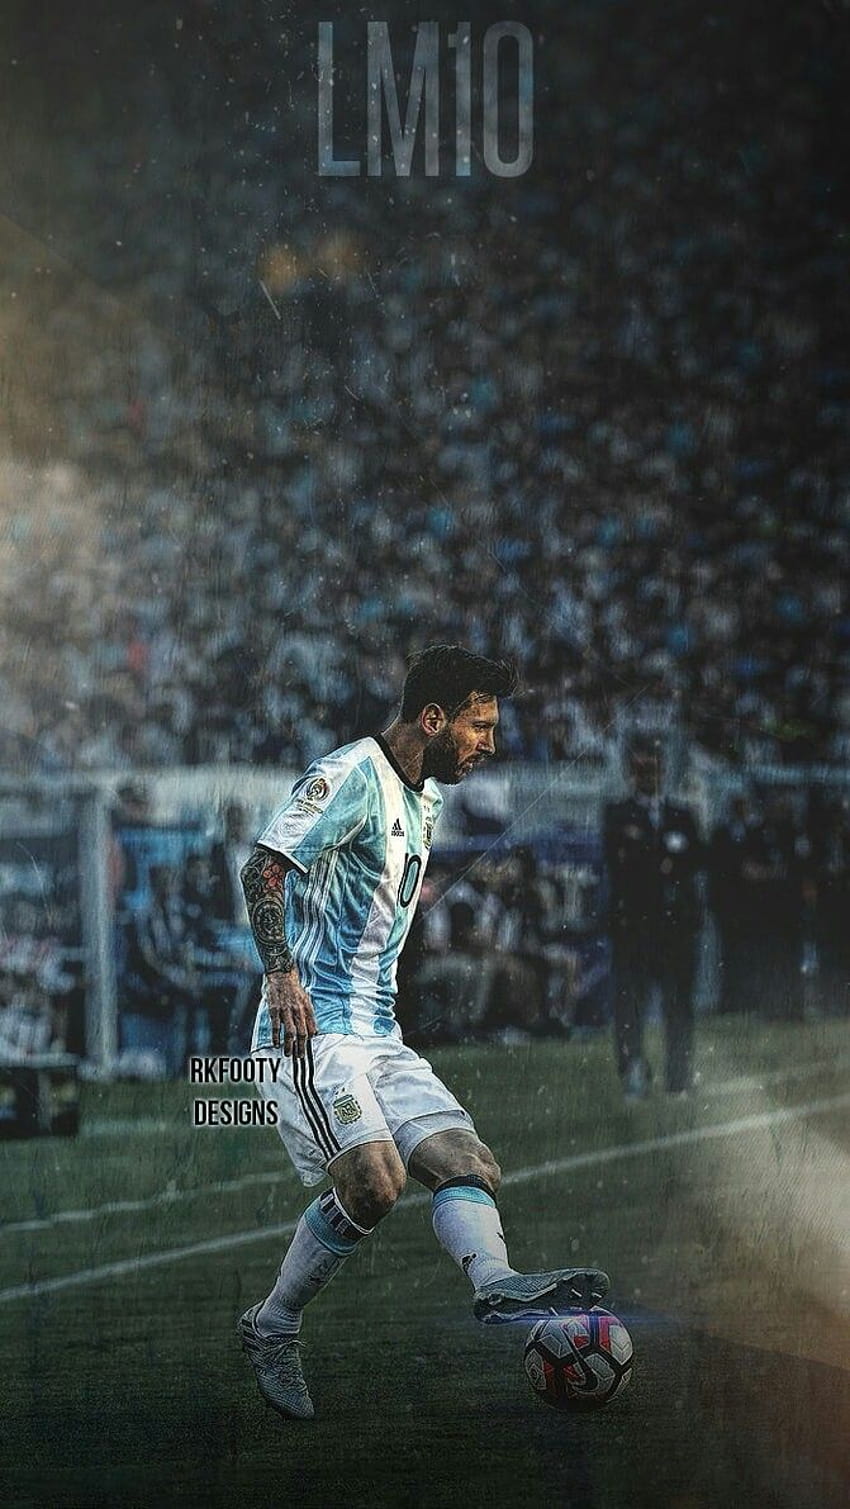 Lionel Messi của Argentina là một trong những cầu thủ bóng đá nổi tiếng nhất thế giới. Hãy xem hình ảnh này để chiêm ngưỡng người hùng của đội tuyển bóng đá Argentina và cầu thủ bóng đá xuất sắc.